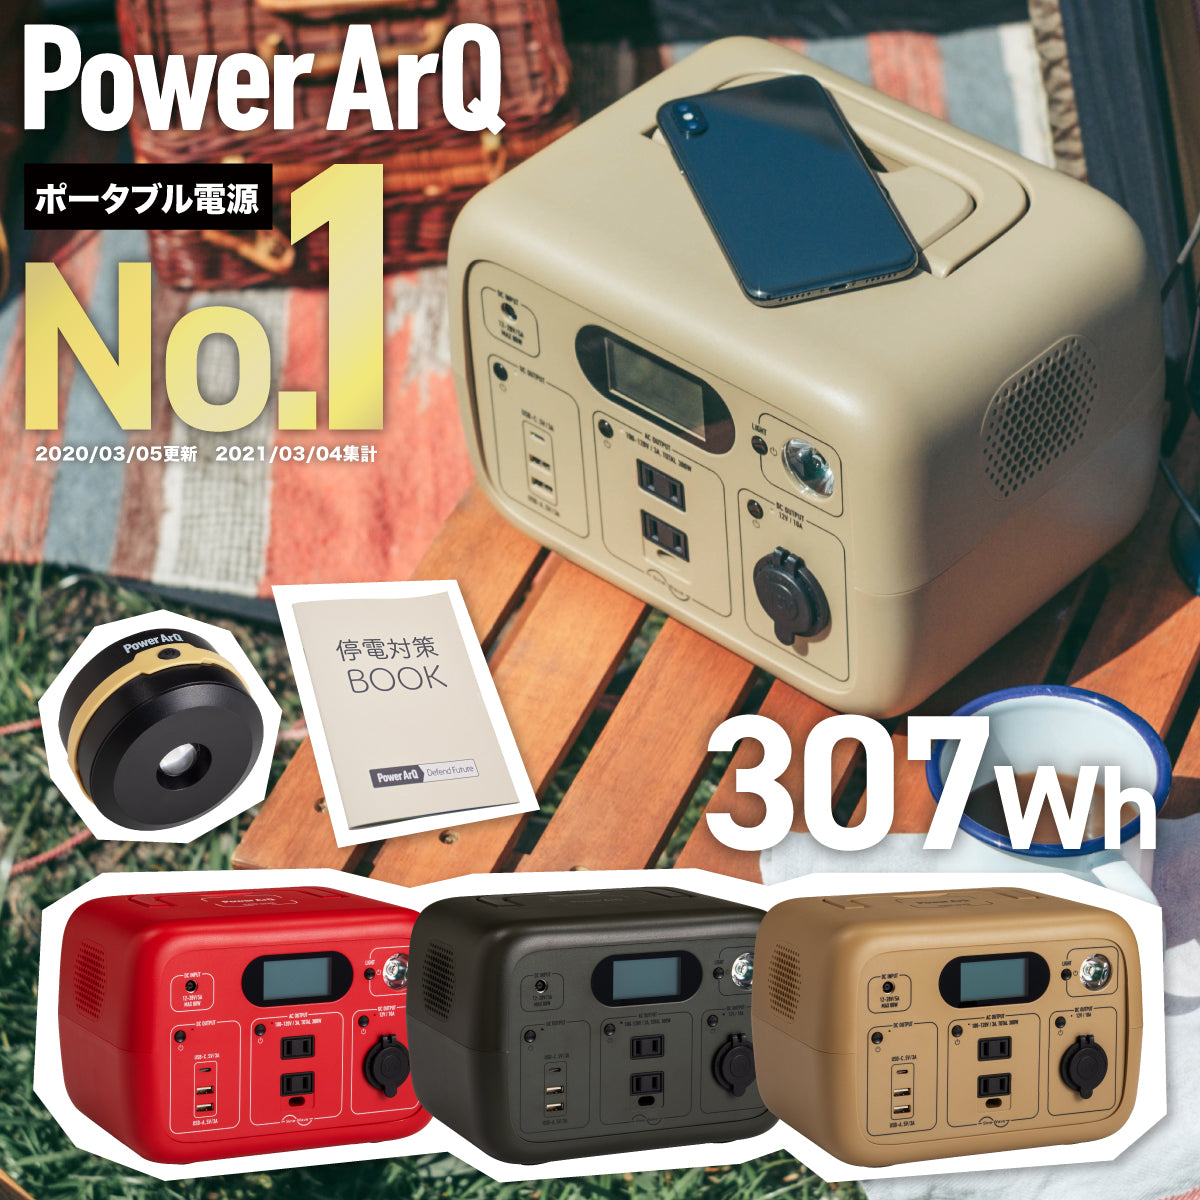 PowerArQ mini ポータブル電源 346Wh – PowerArQ（パワーアーク）公式